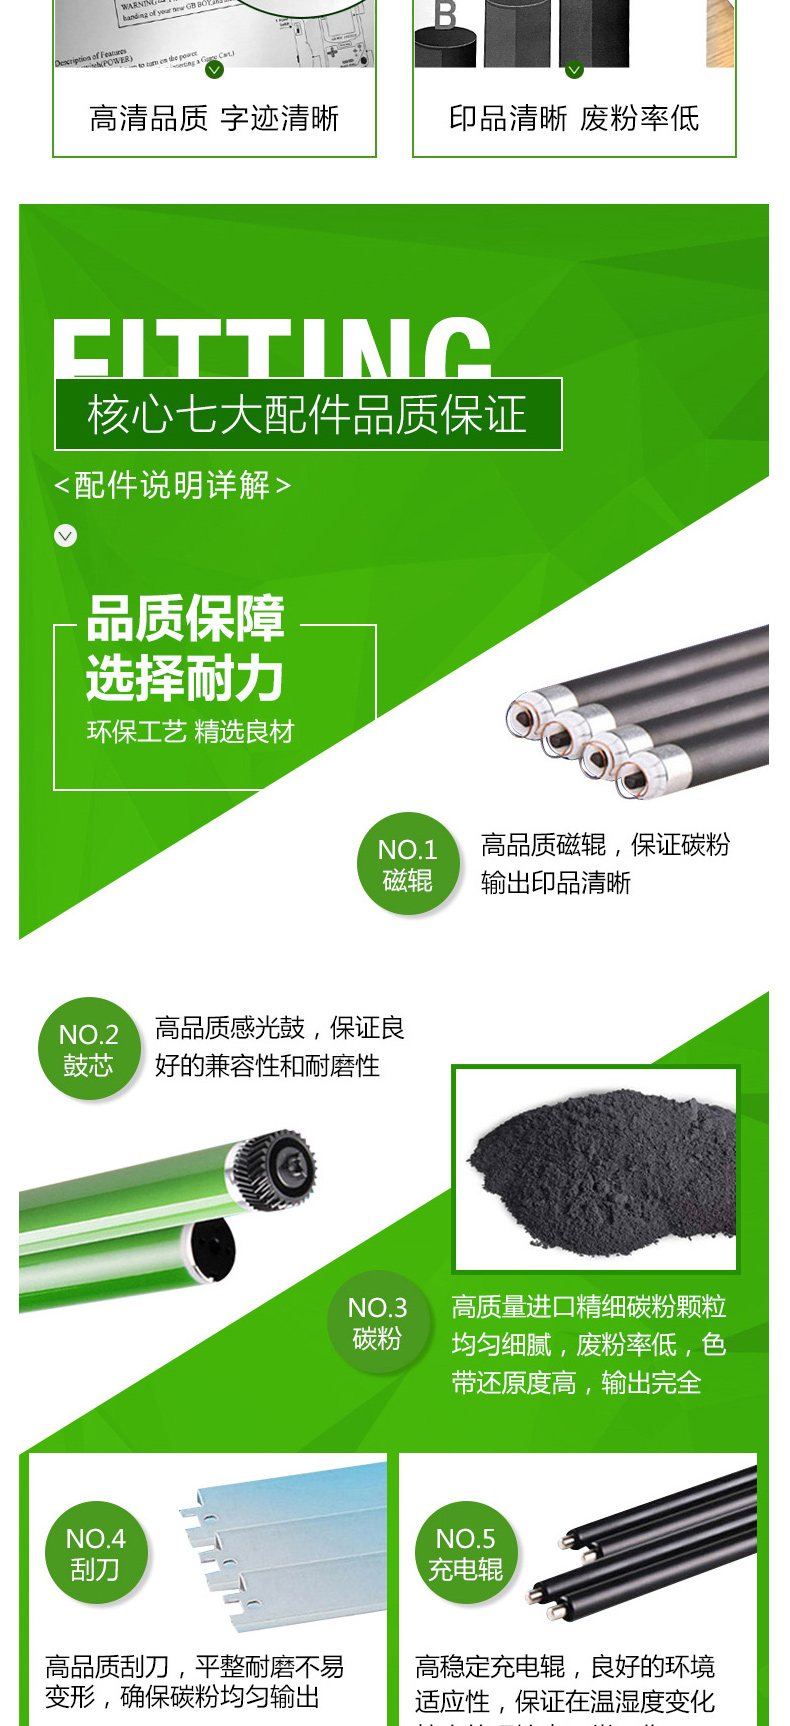 耐力 NIKO 碳粉 CF230X (黑色) 易加粉大容量粉盒带芯片(适用于惠普/HP)